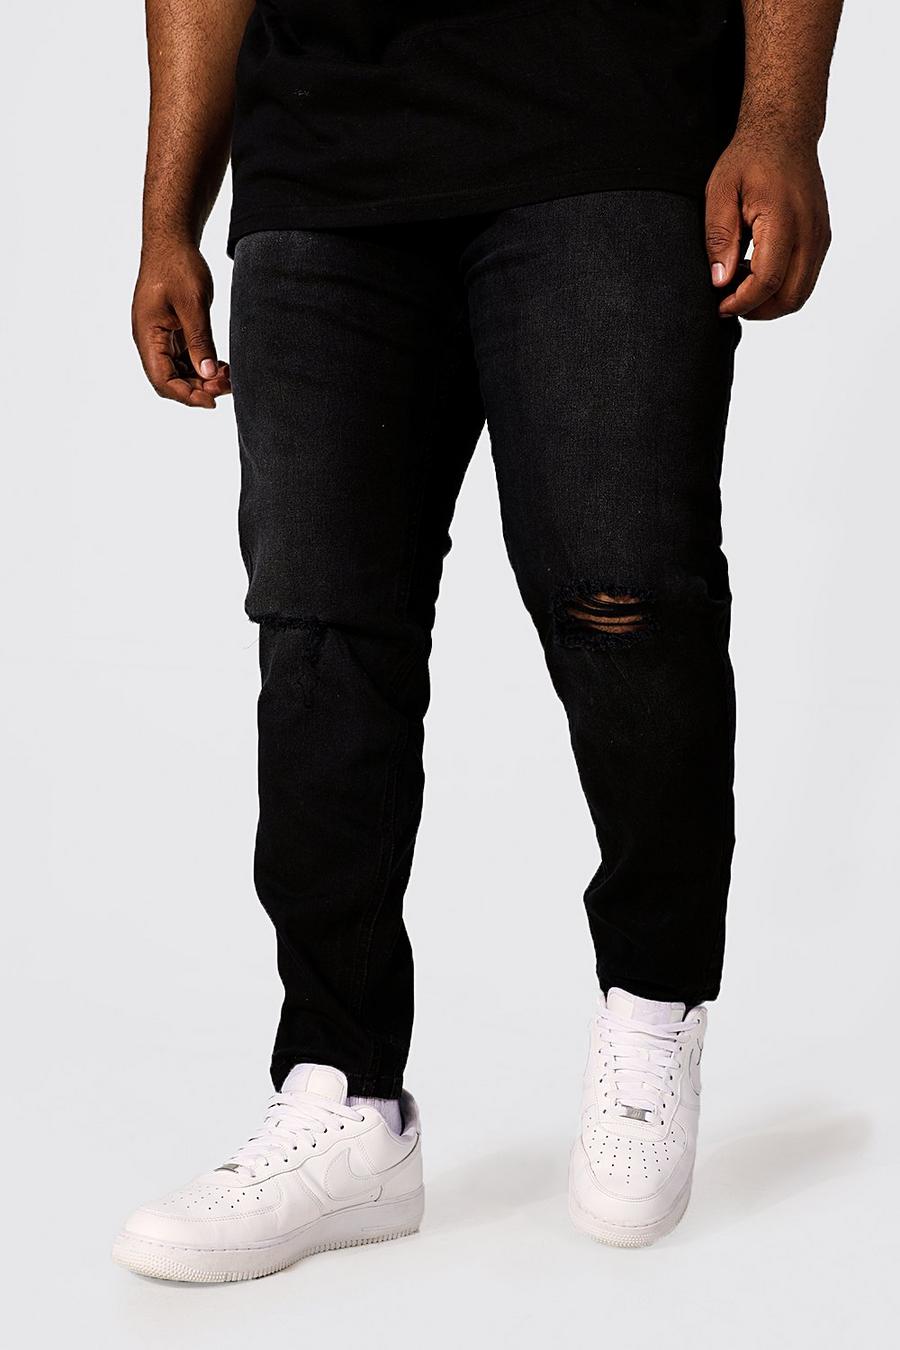 שחור דהוי ג'ינס סקיני עם שסע בברך, מידות גדולות